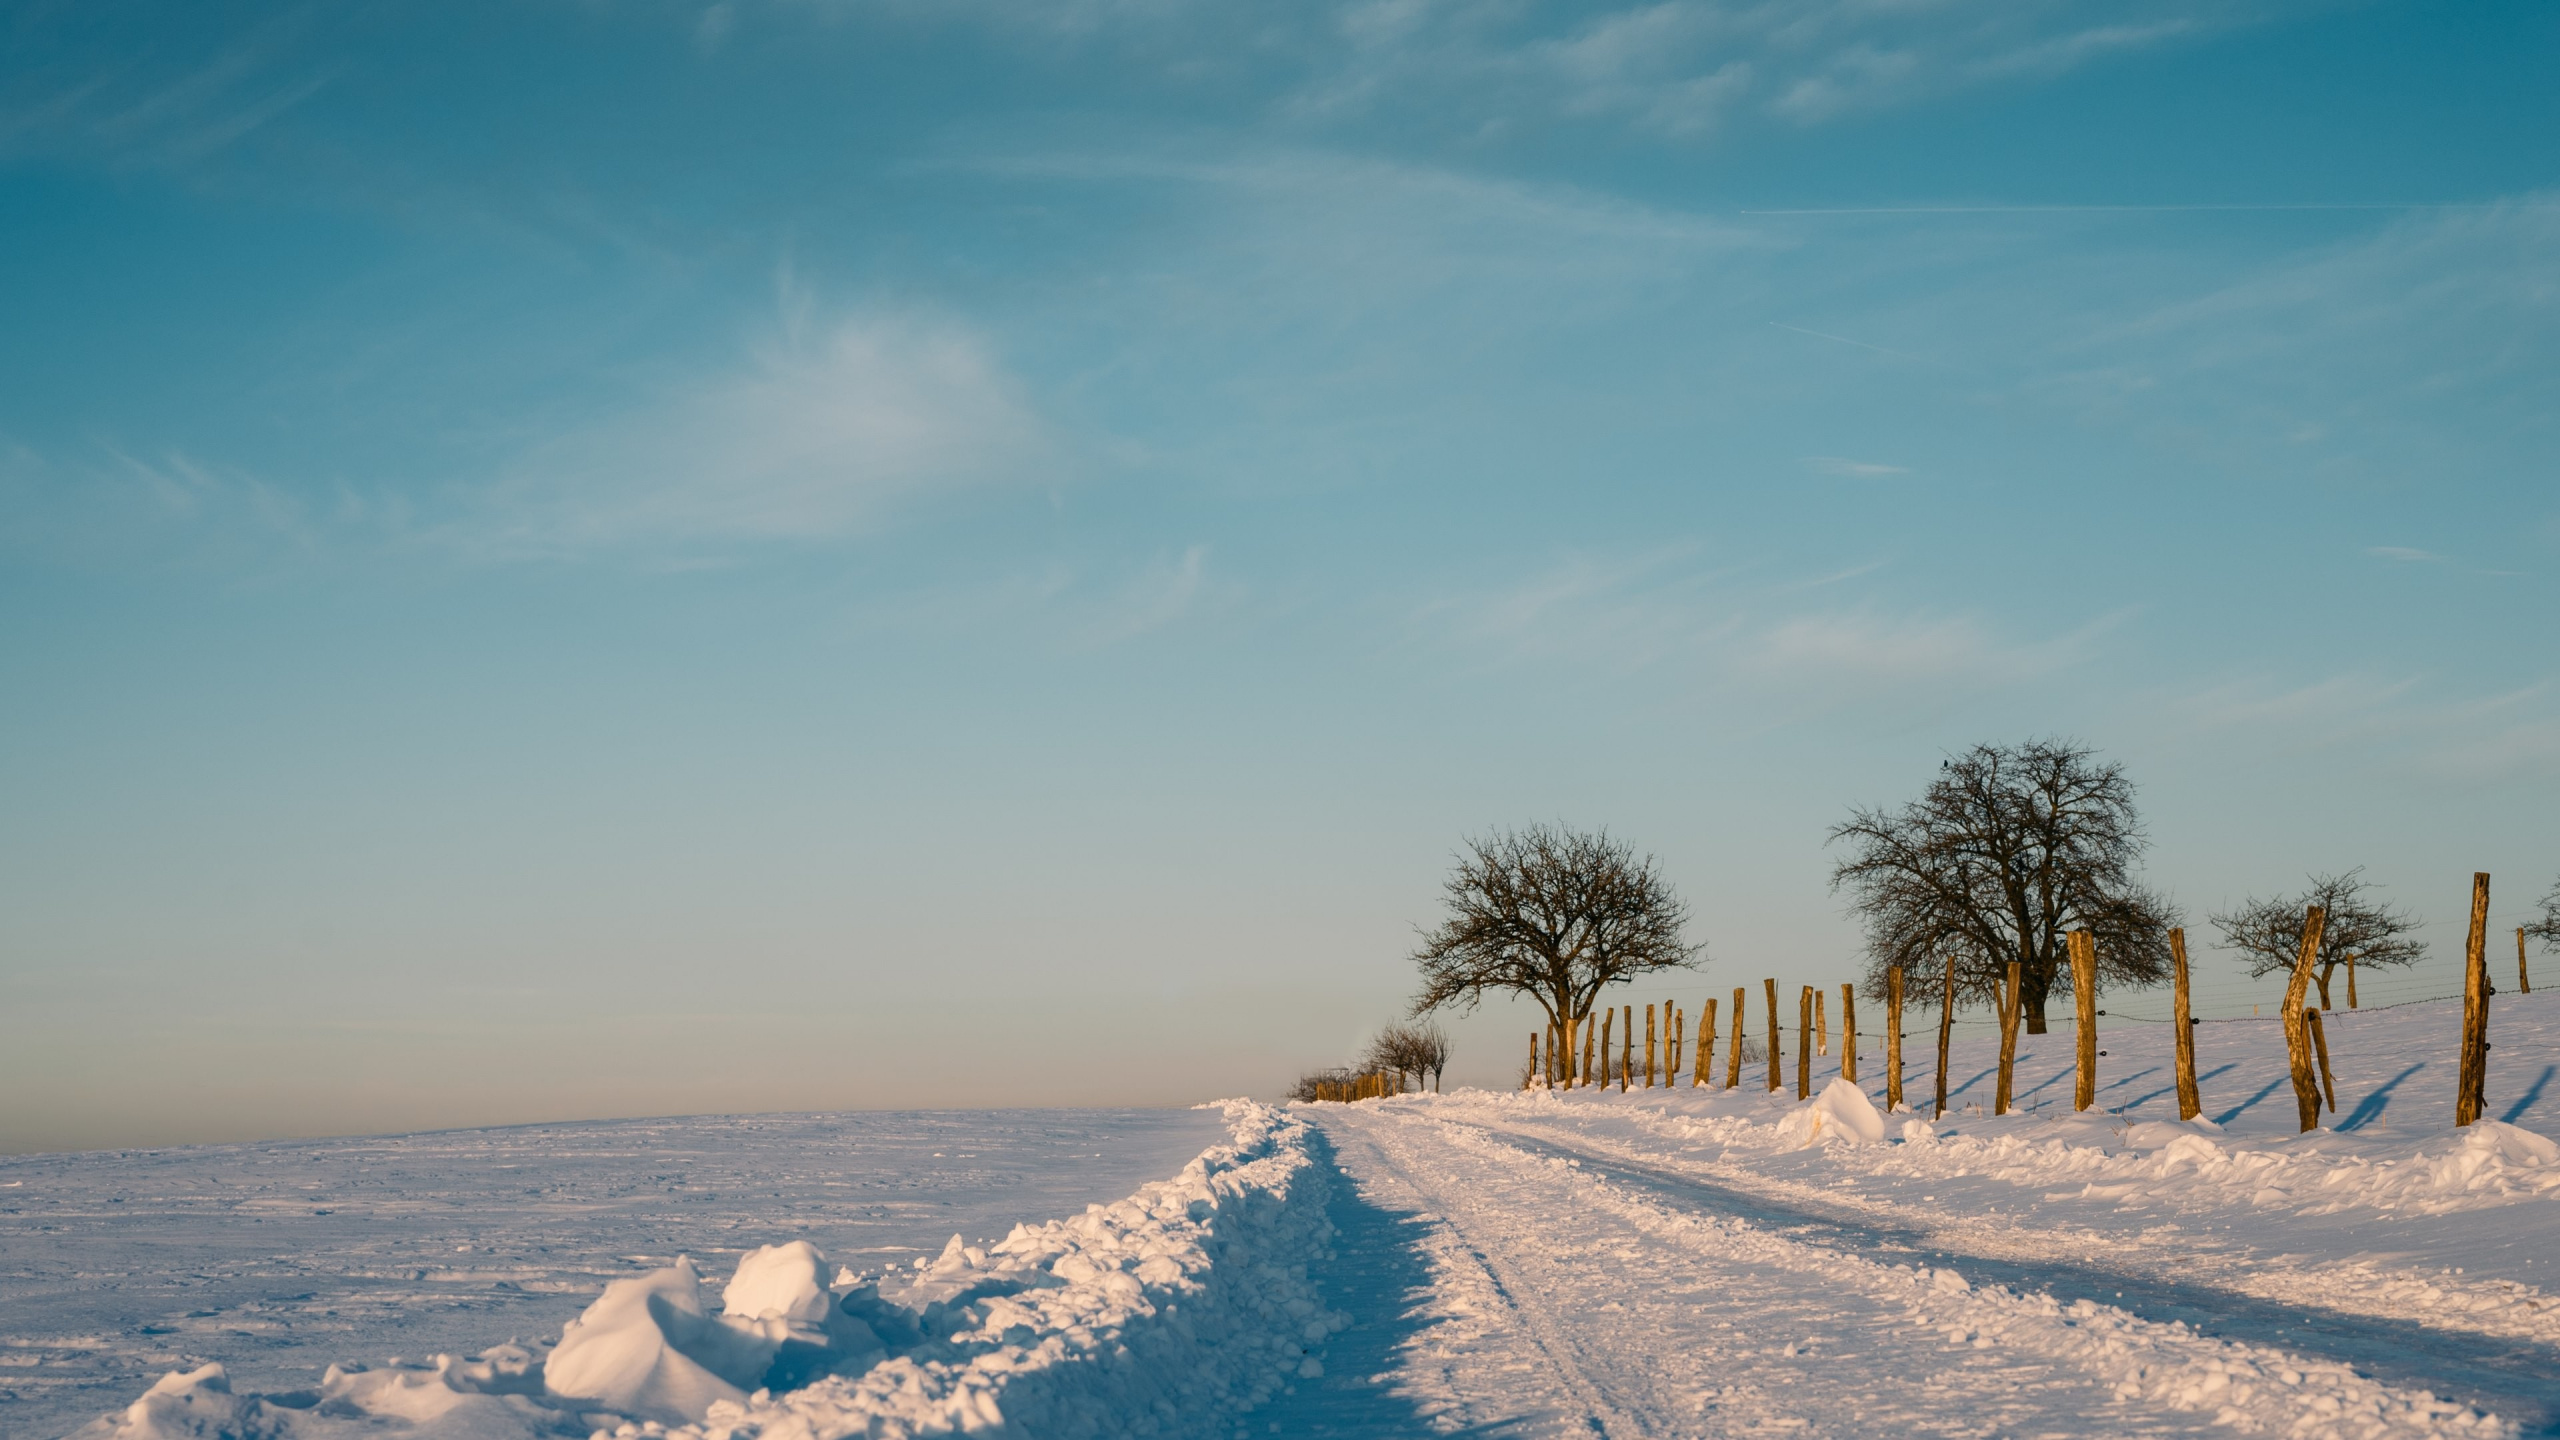 冬天, 冻结, 地平线, 北极, 阳光 壁纸 2560x1440 允许